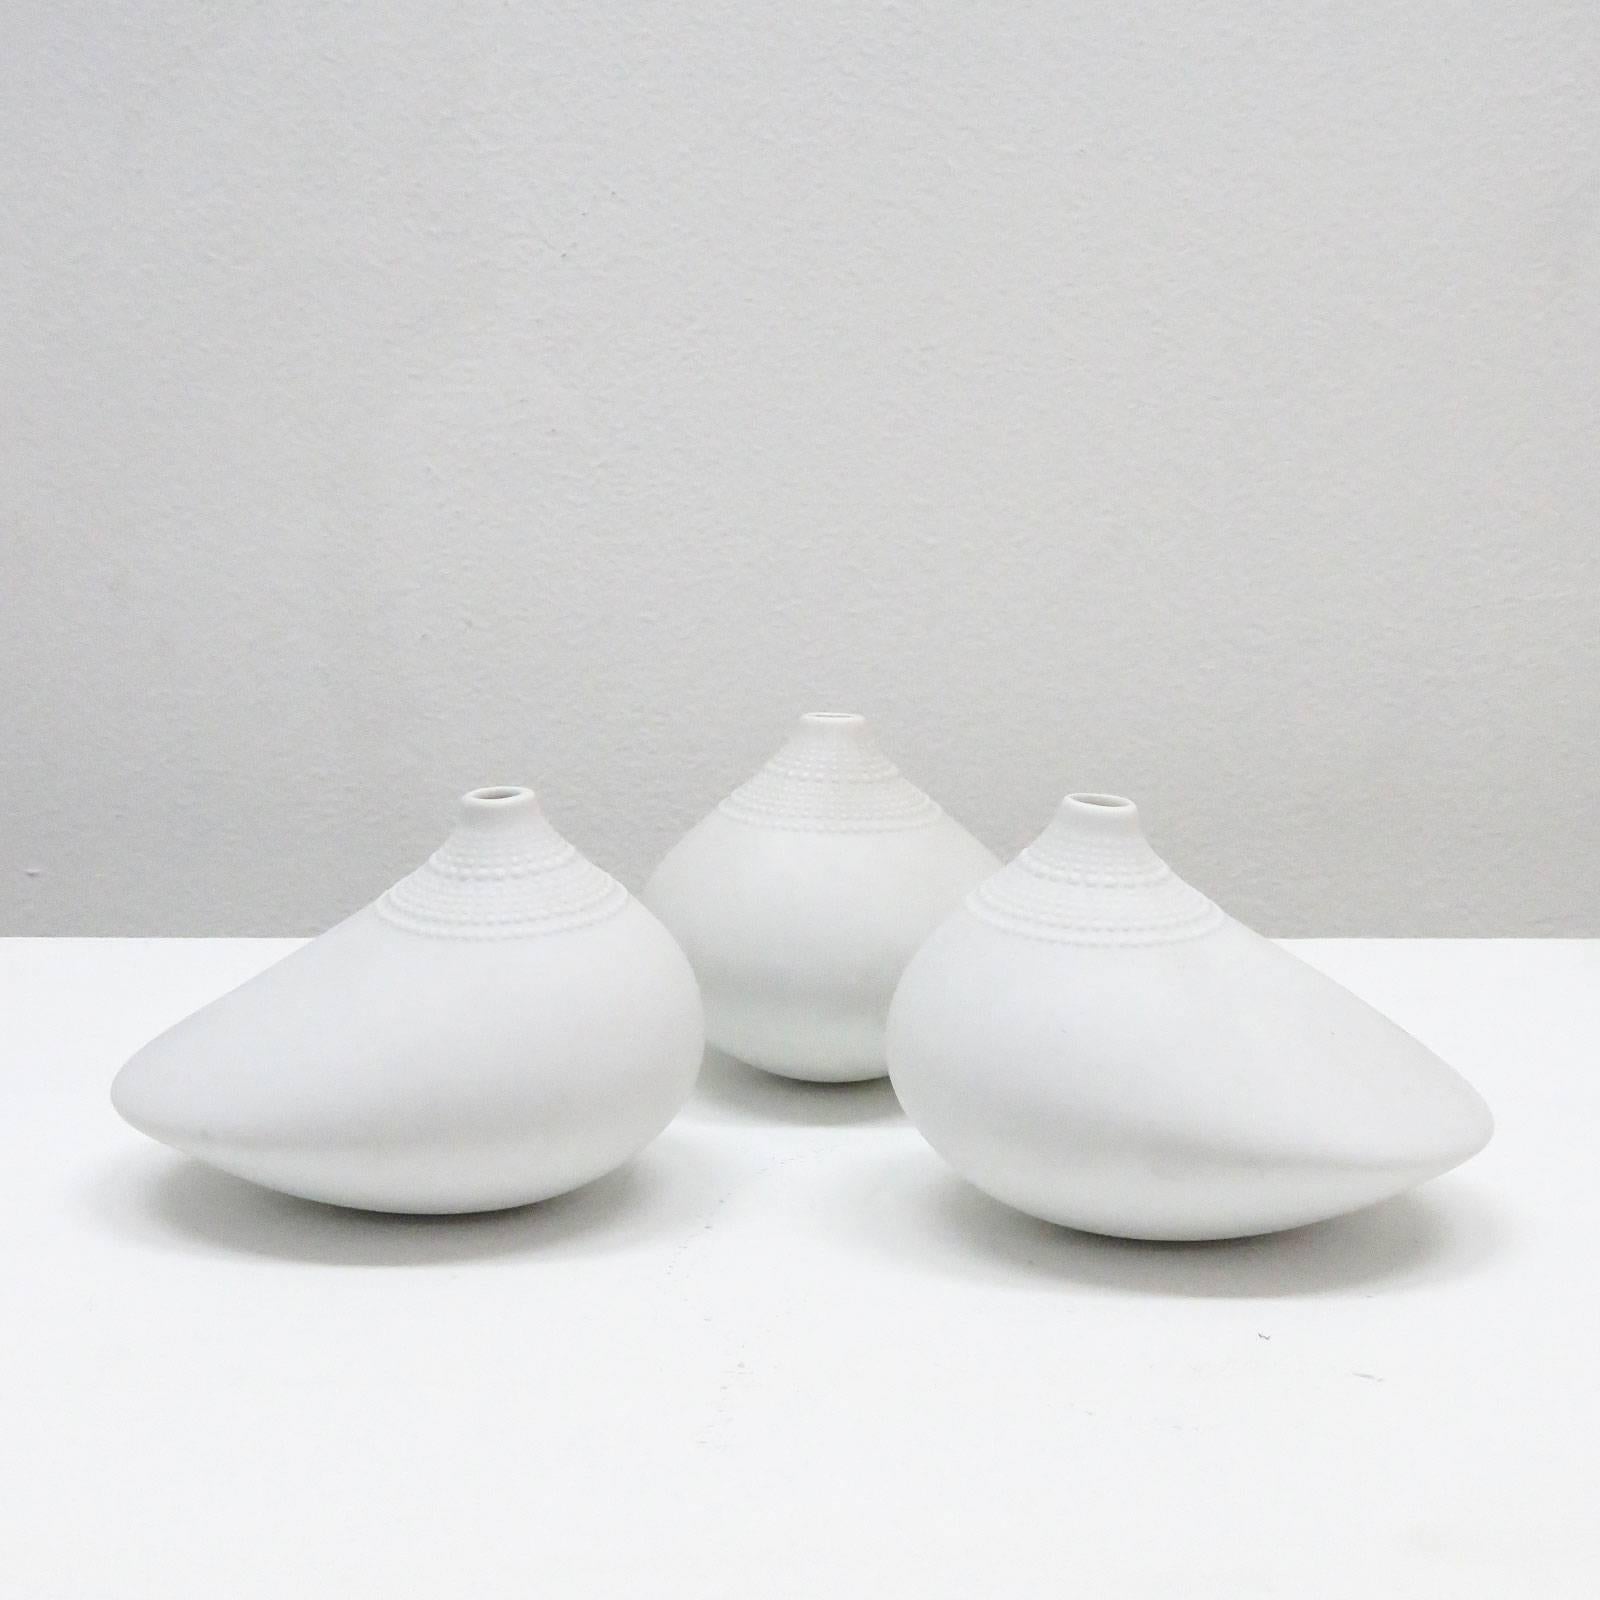 Tapio Wirkkala 'Pollo' Vases for Rosenthal Studio Line, 1970 (Ende des 20. Jahrhunderts)